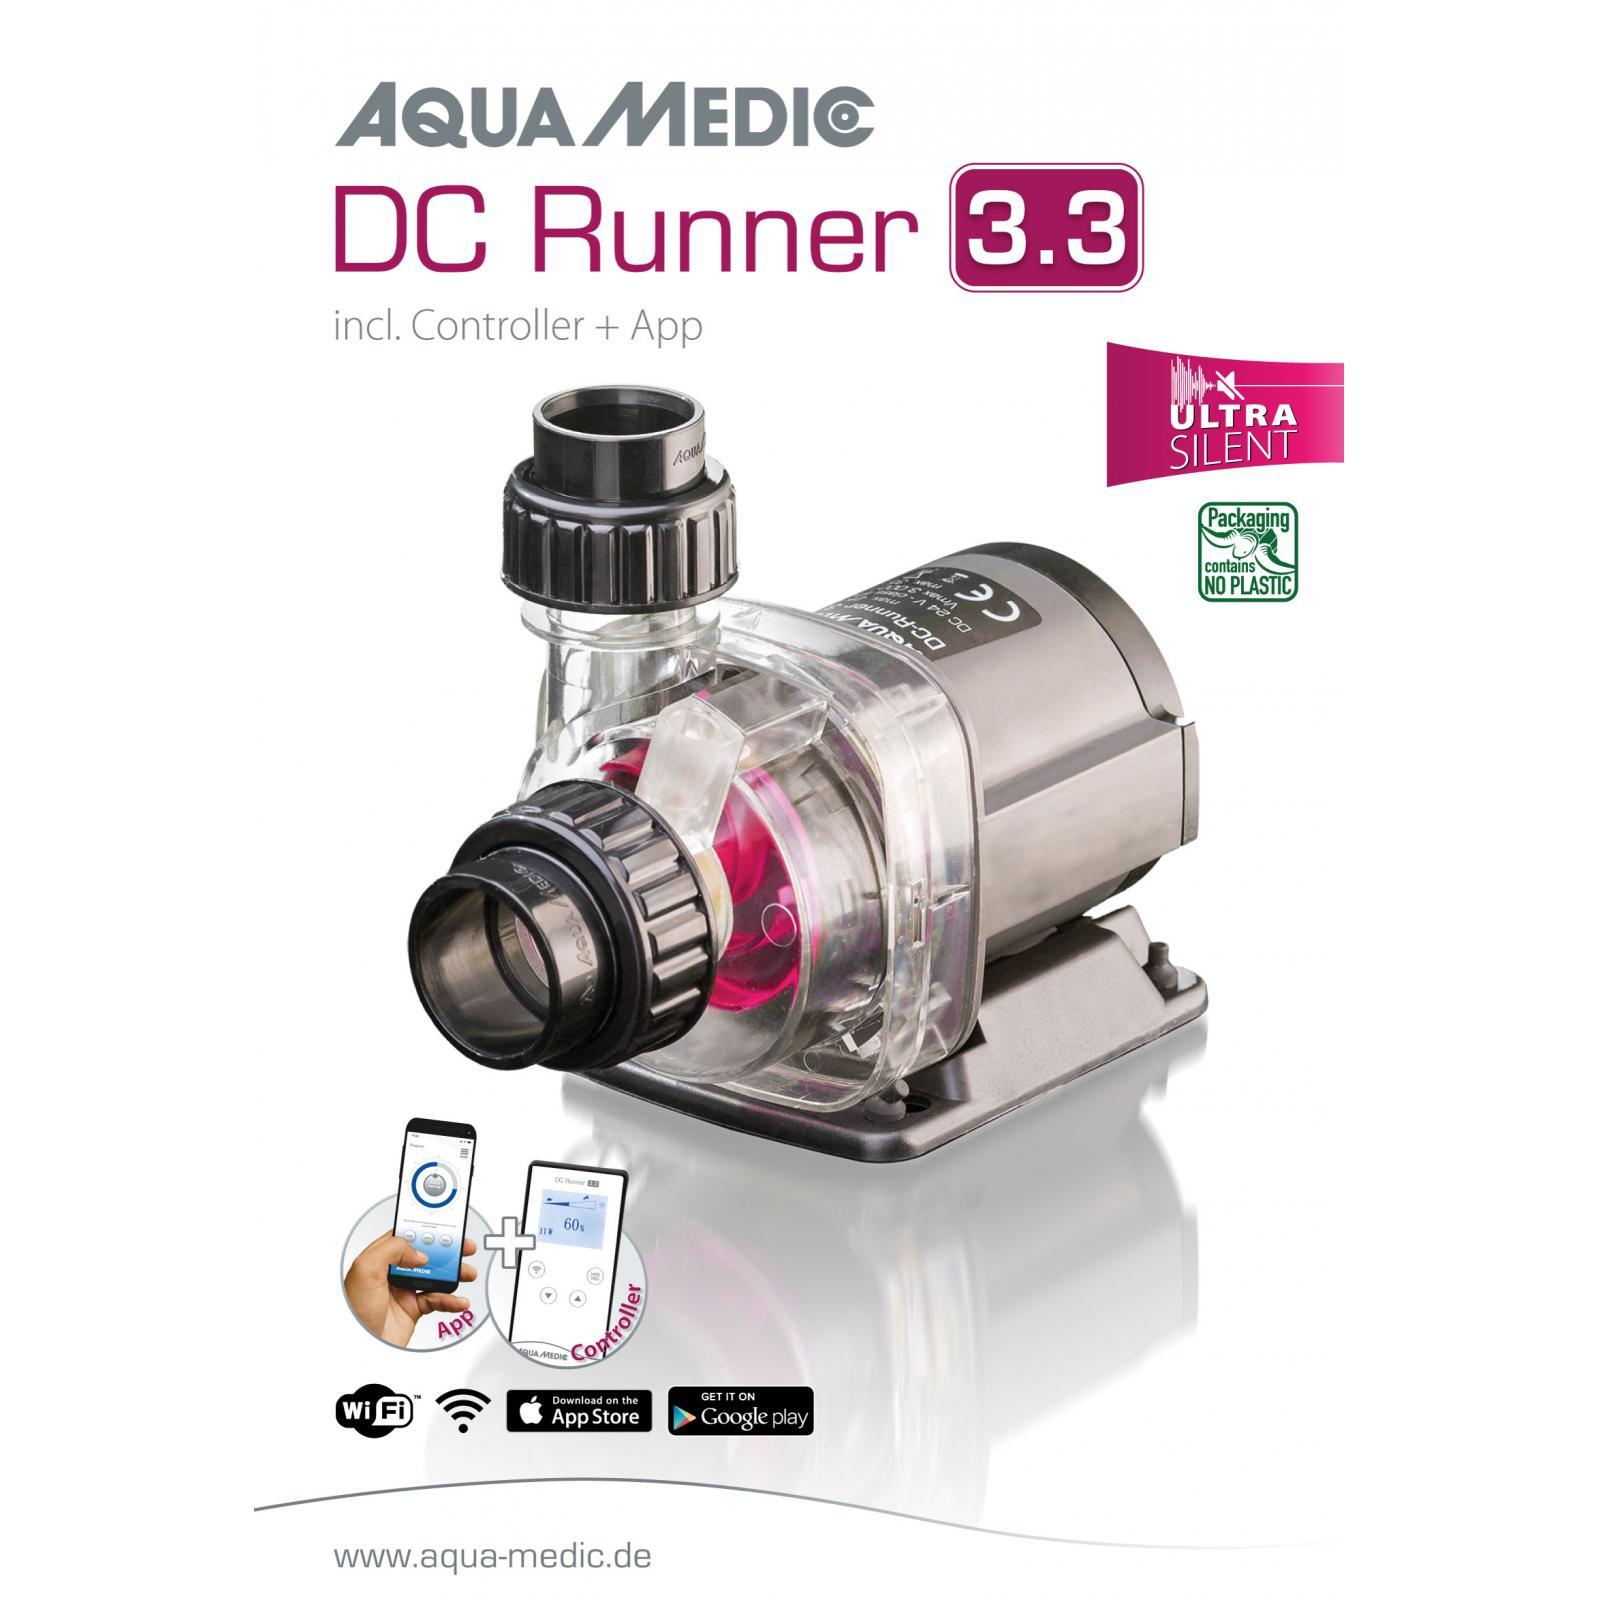 aqua-medic-dc-runner-3-3-ultra-silent-pompe-3000-l-h-avec-controleur-pour-aquarium-d-eau-douce-et-d-eau-mer